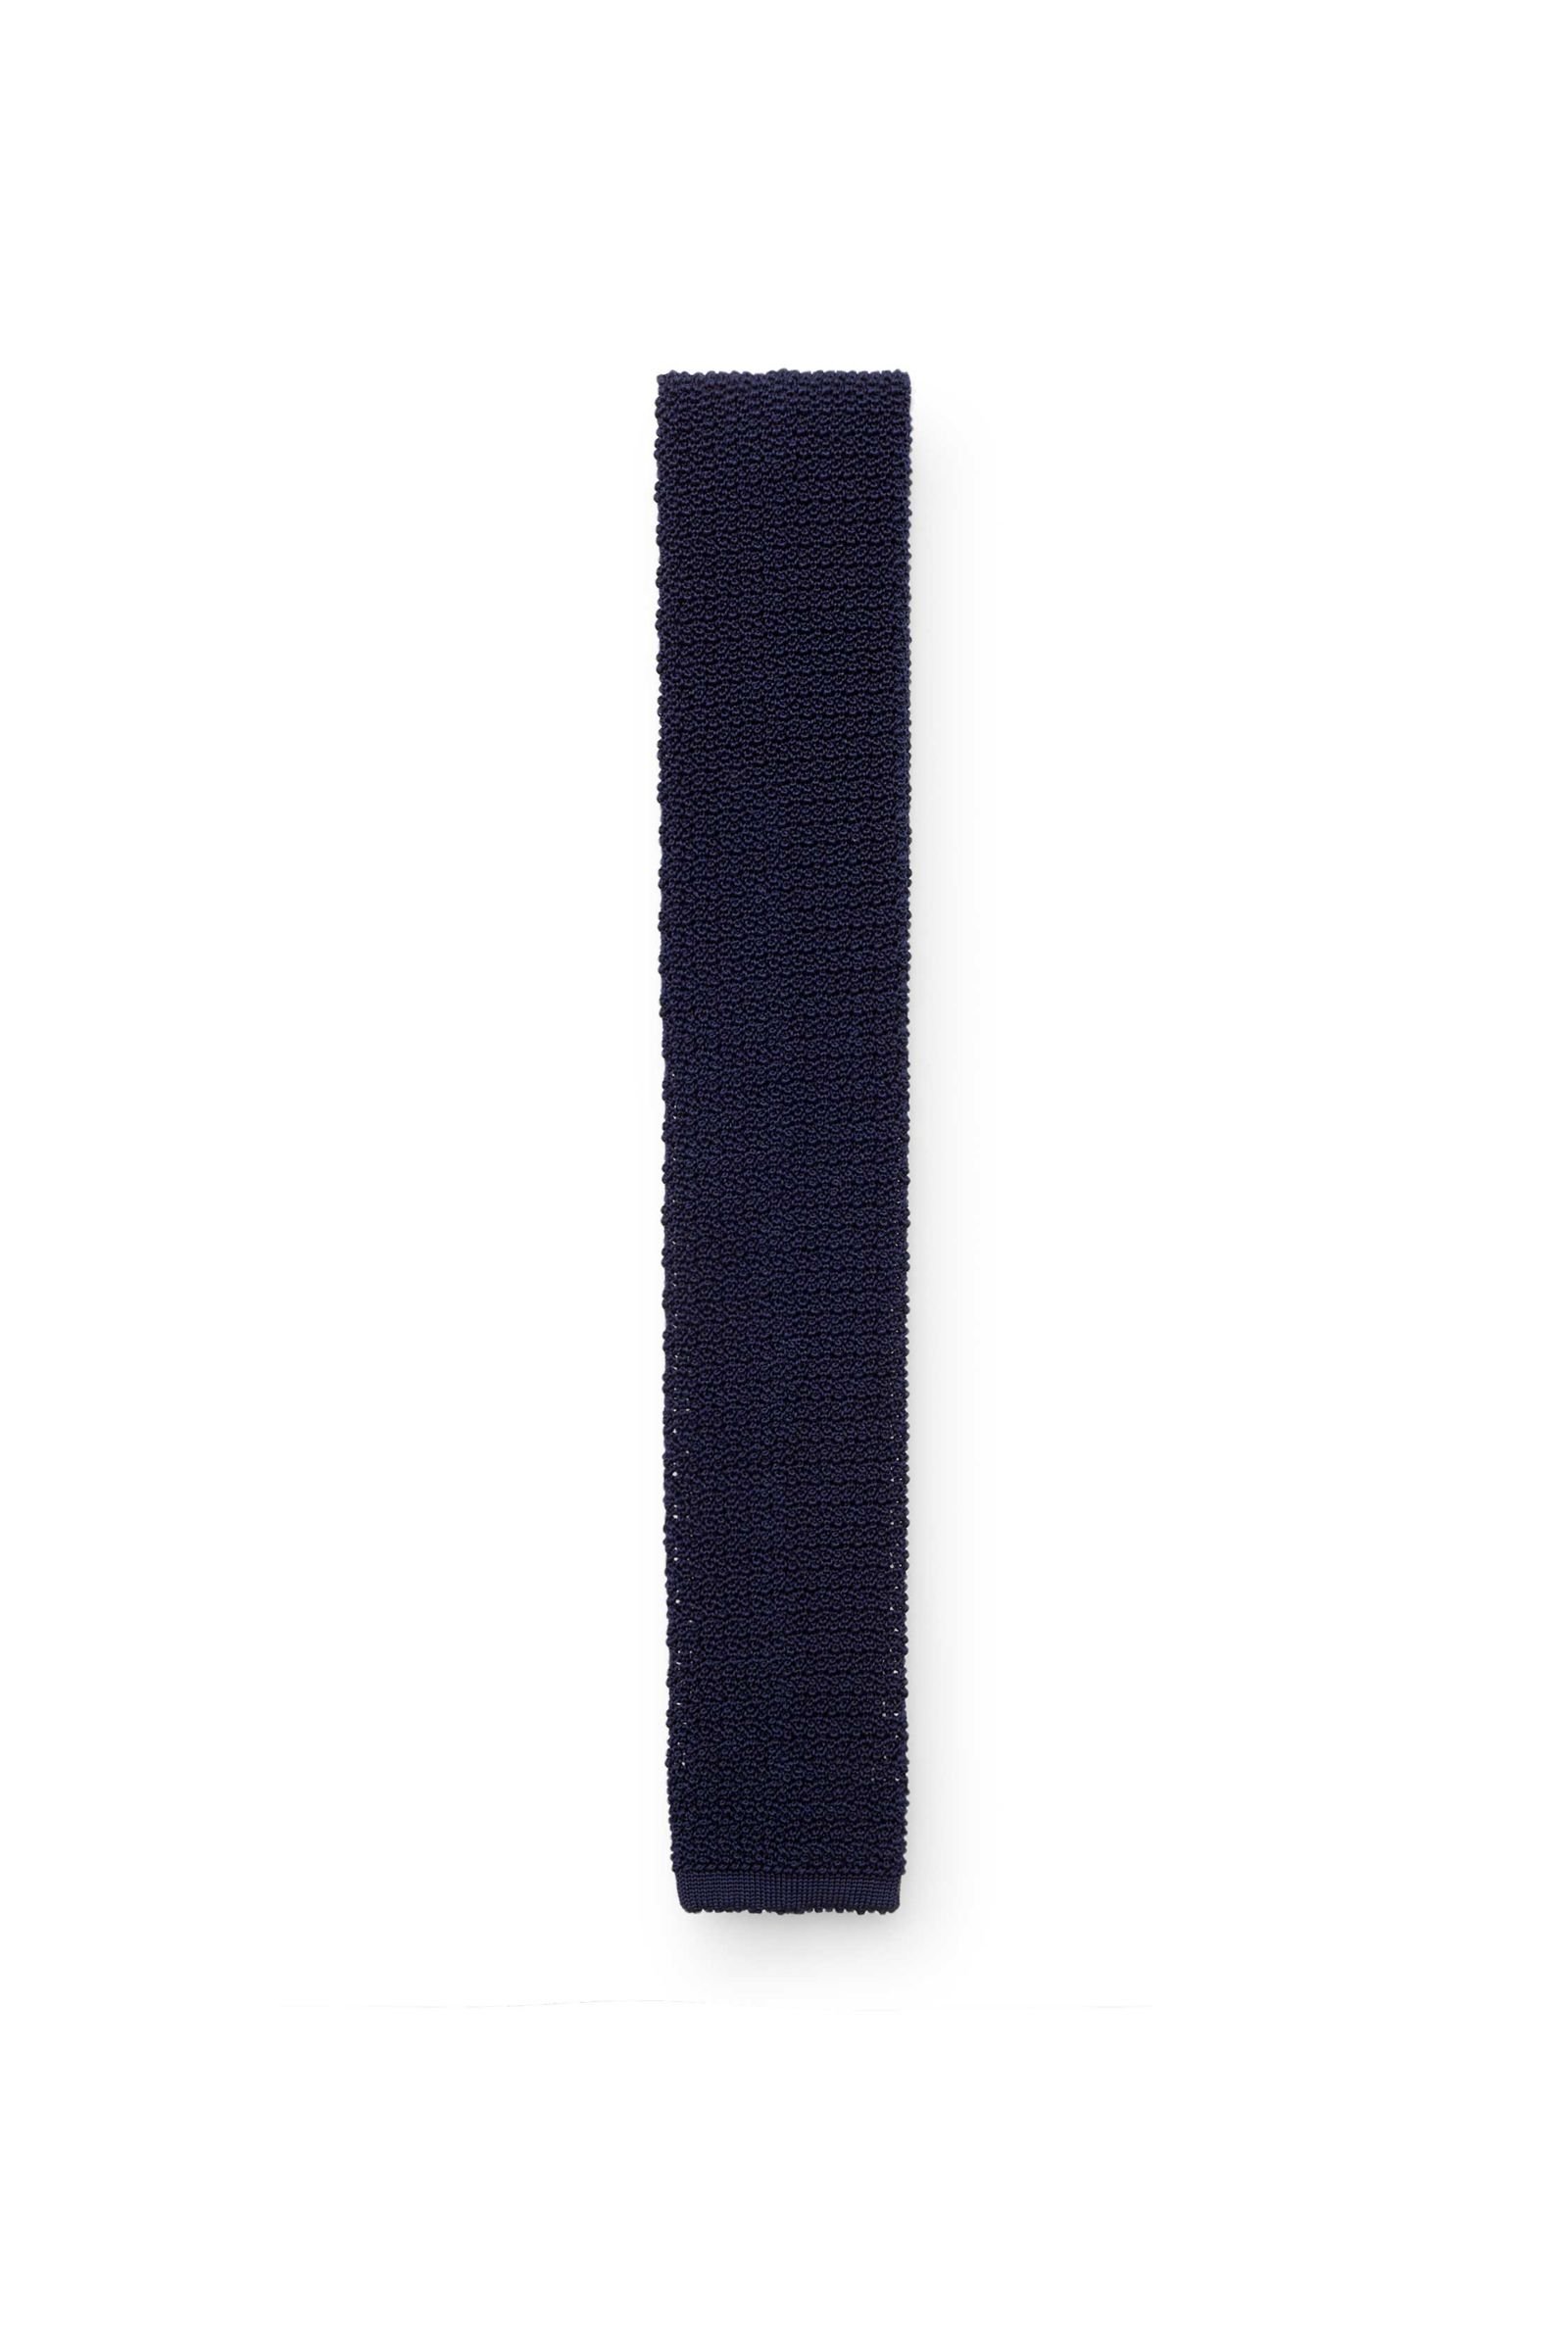 Silk knitted tie navy